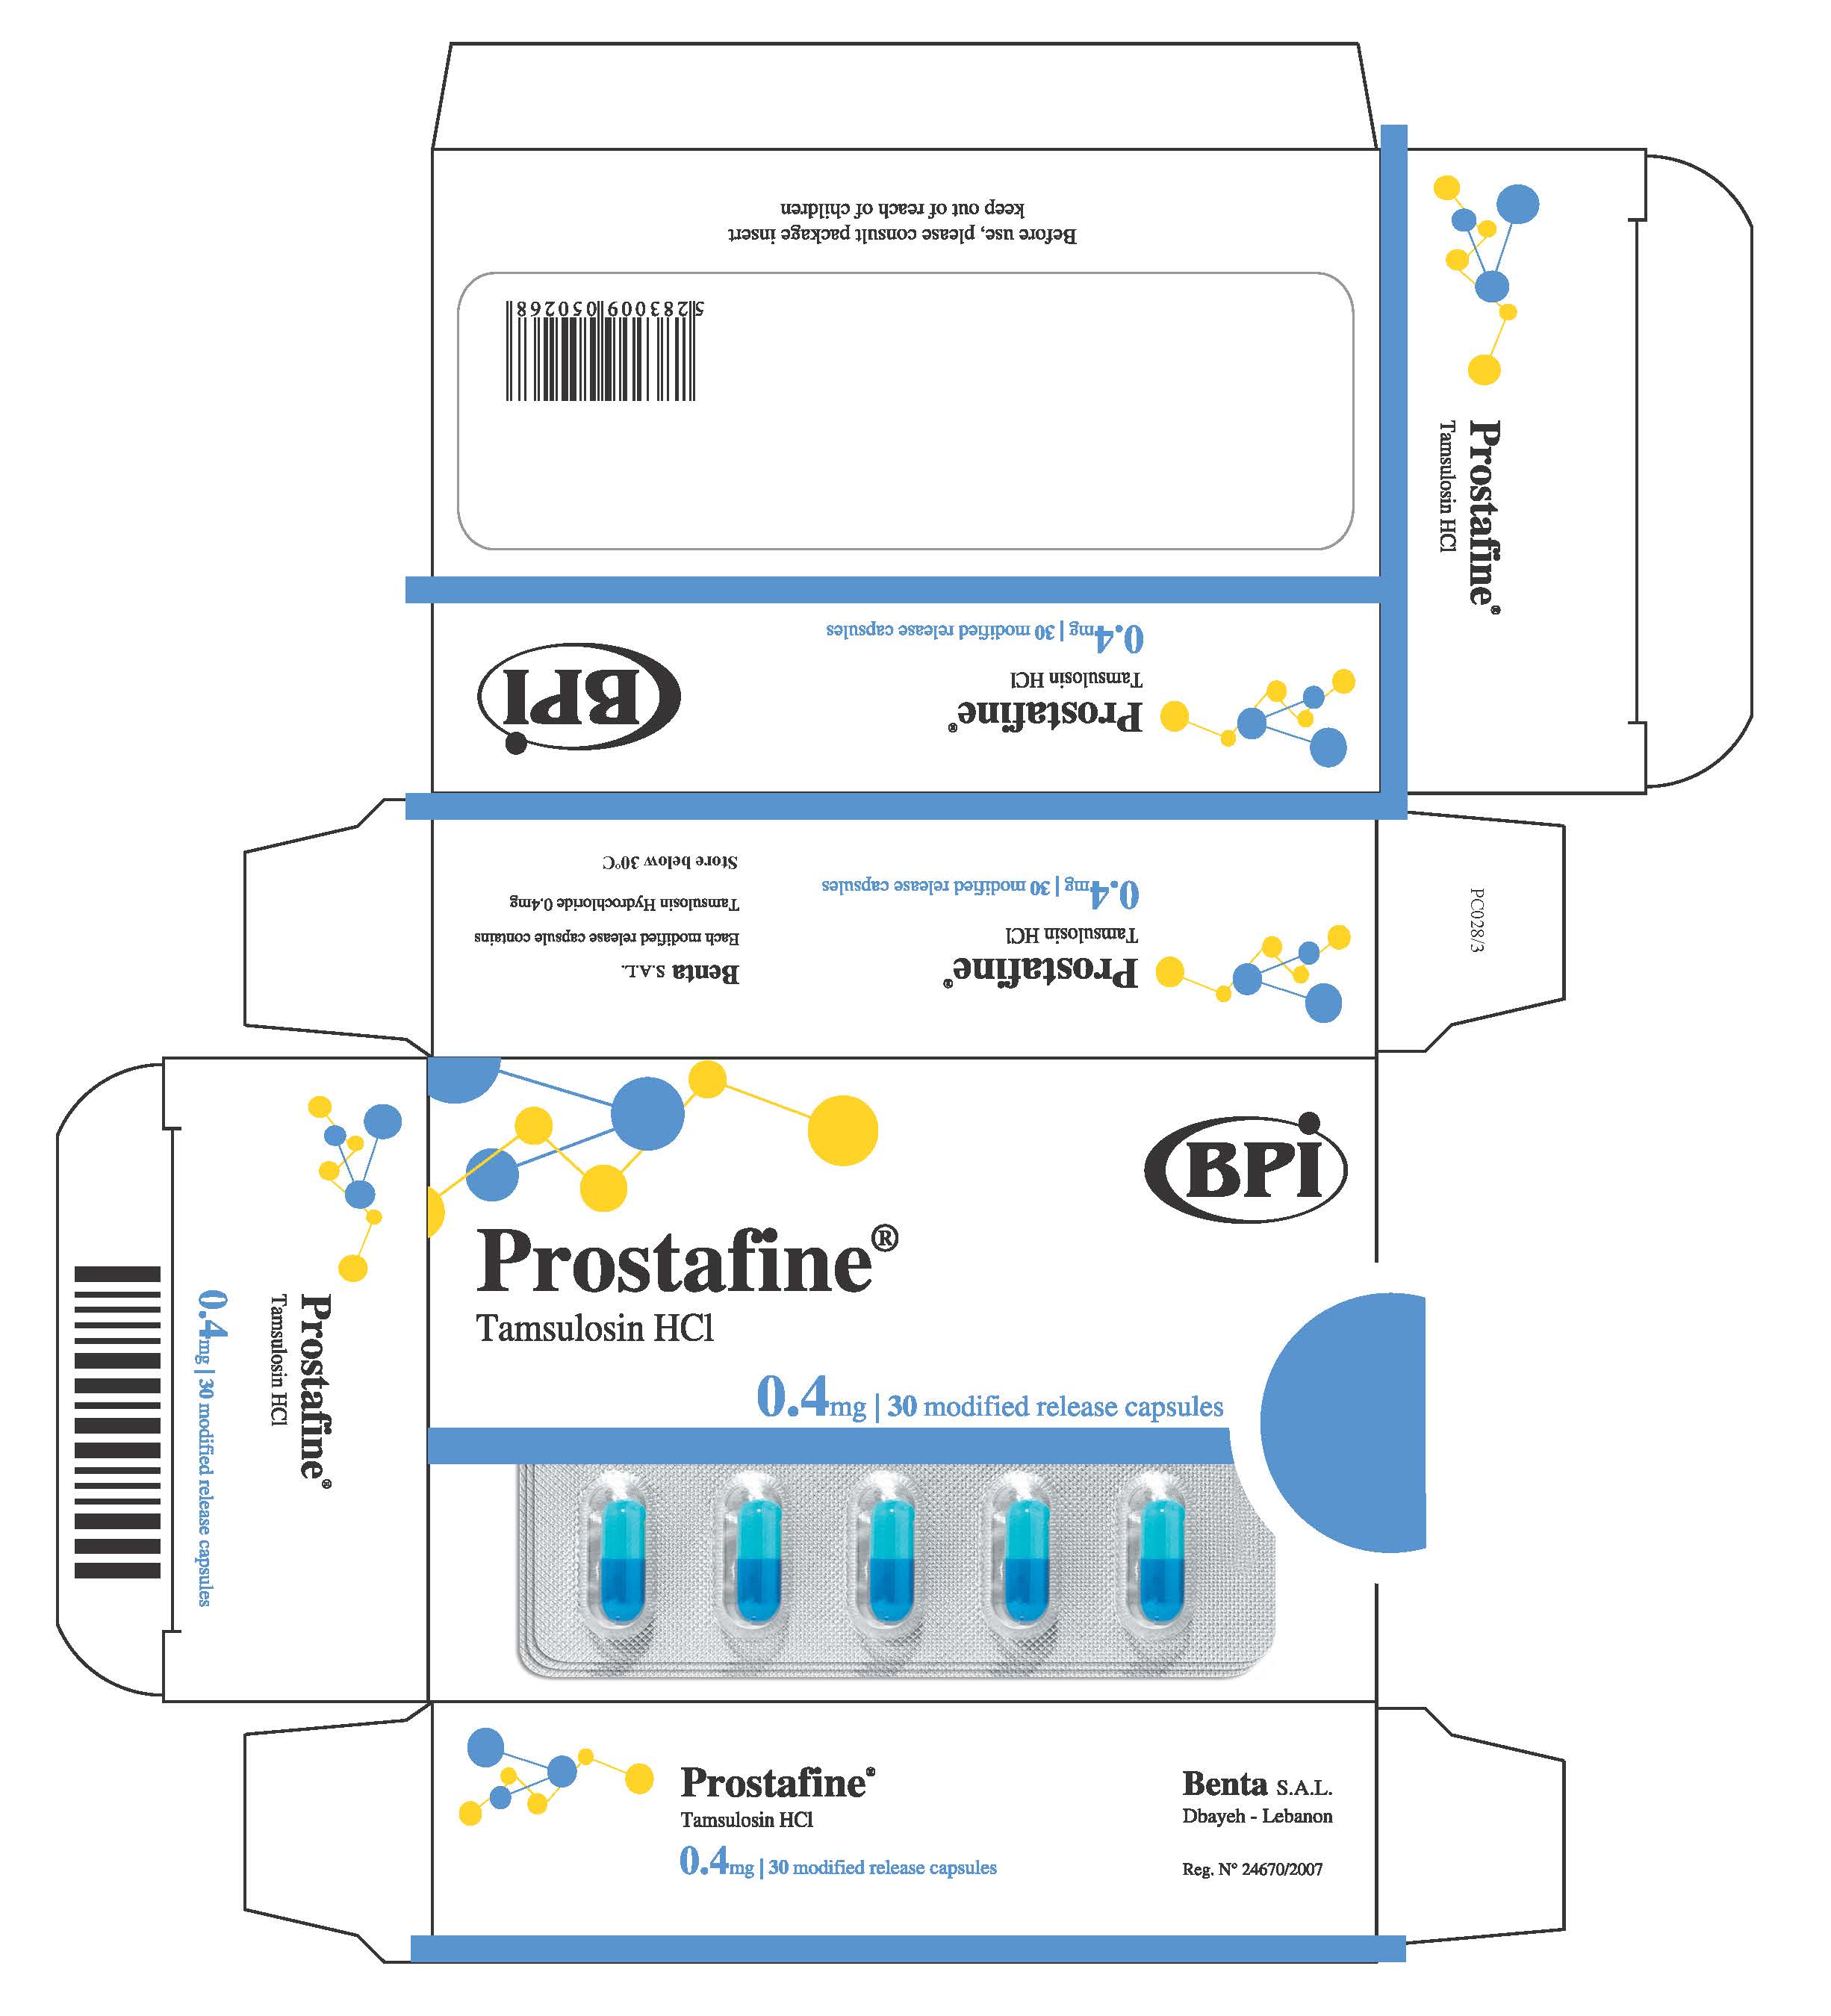 Prostafine